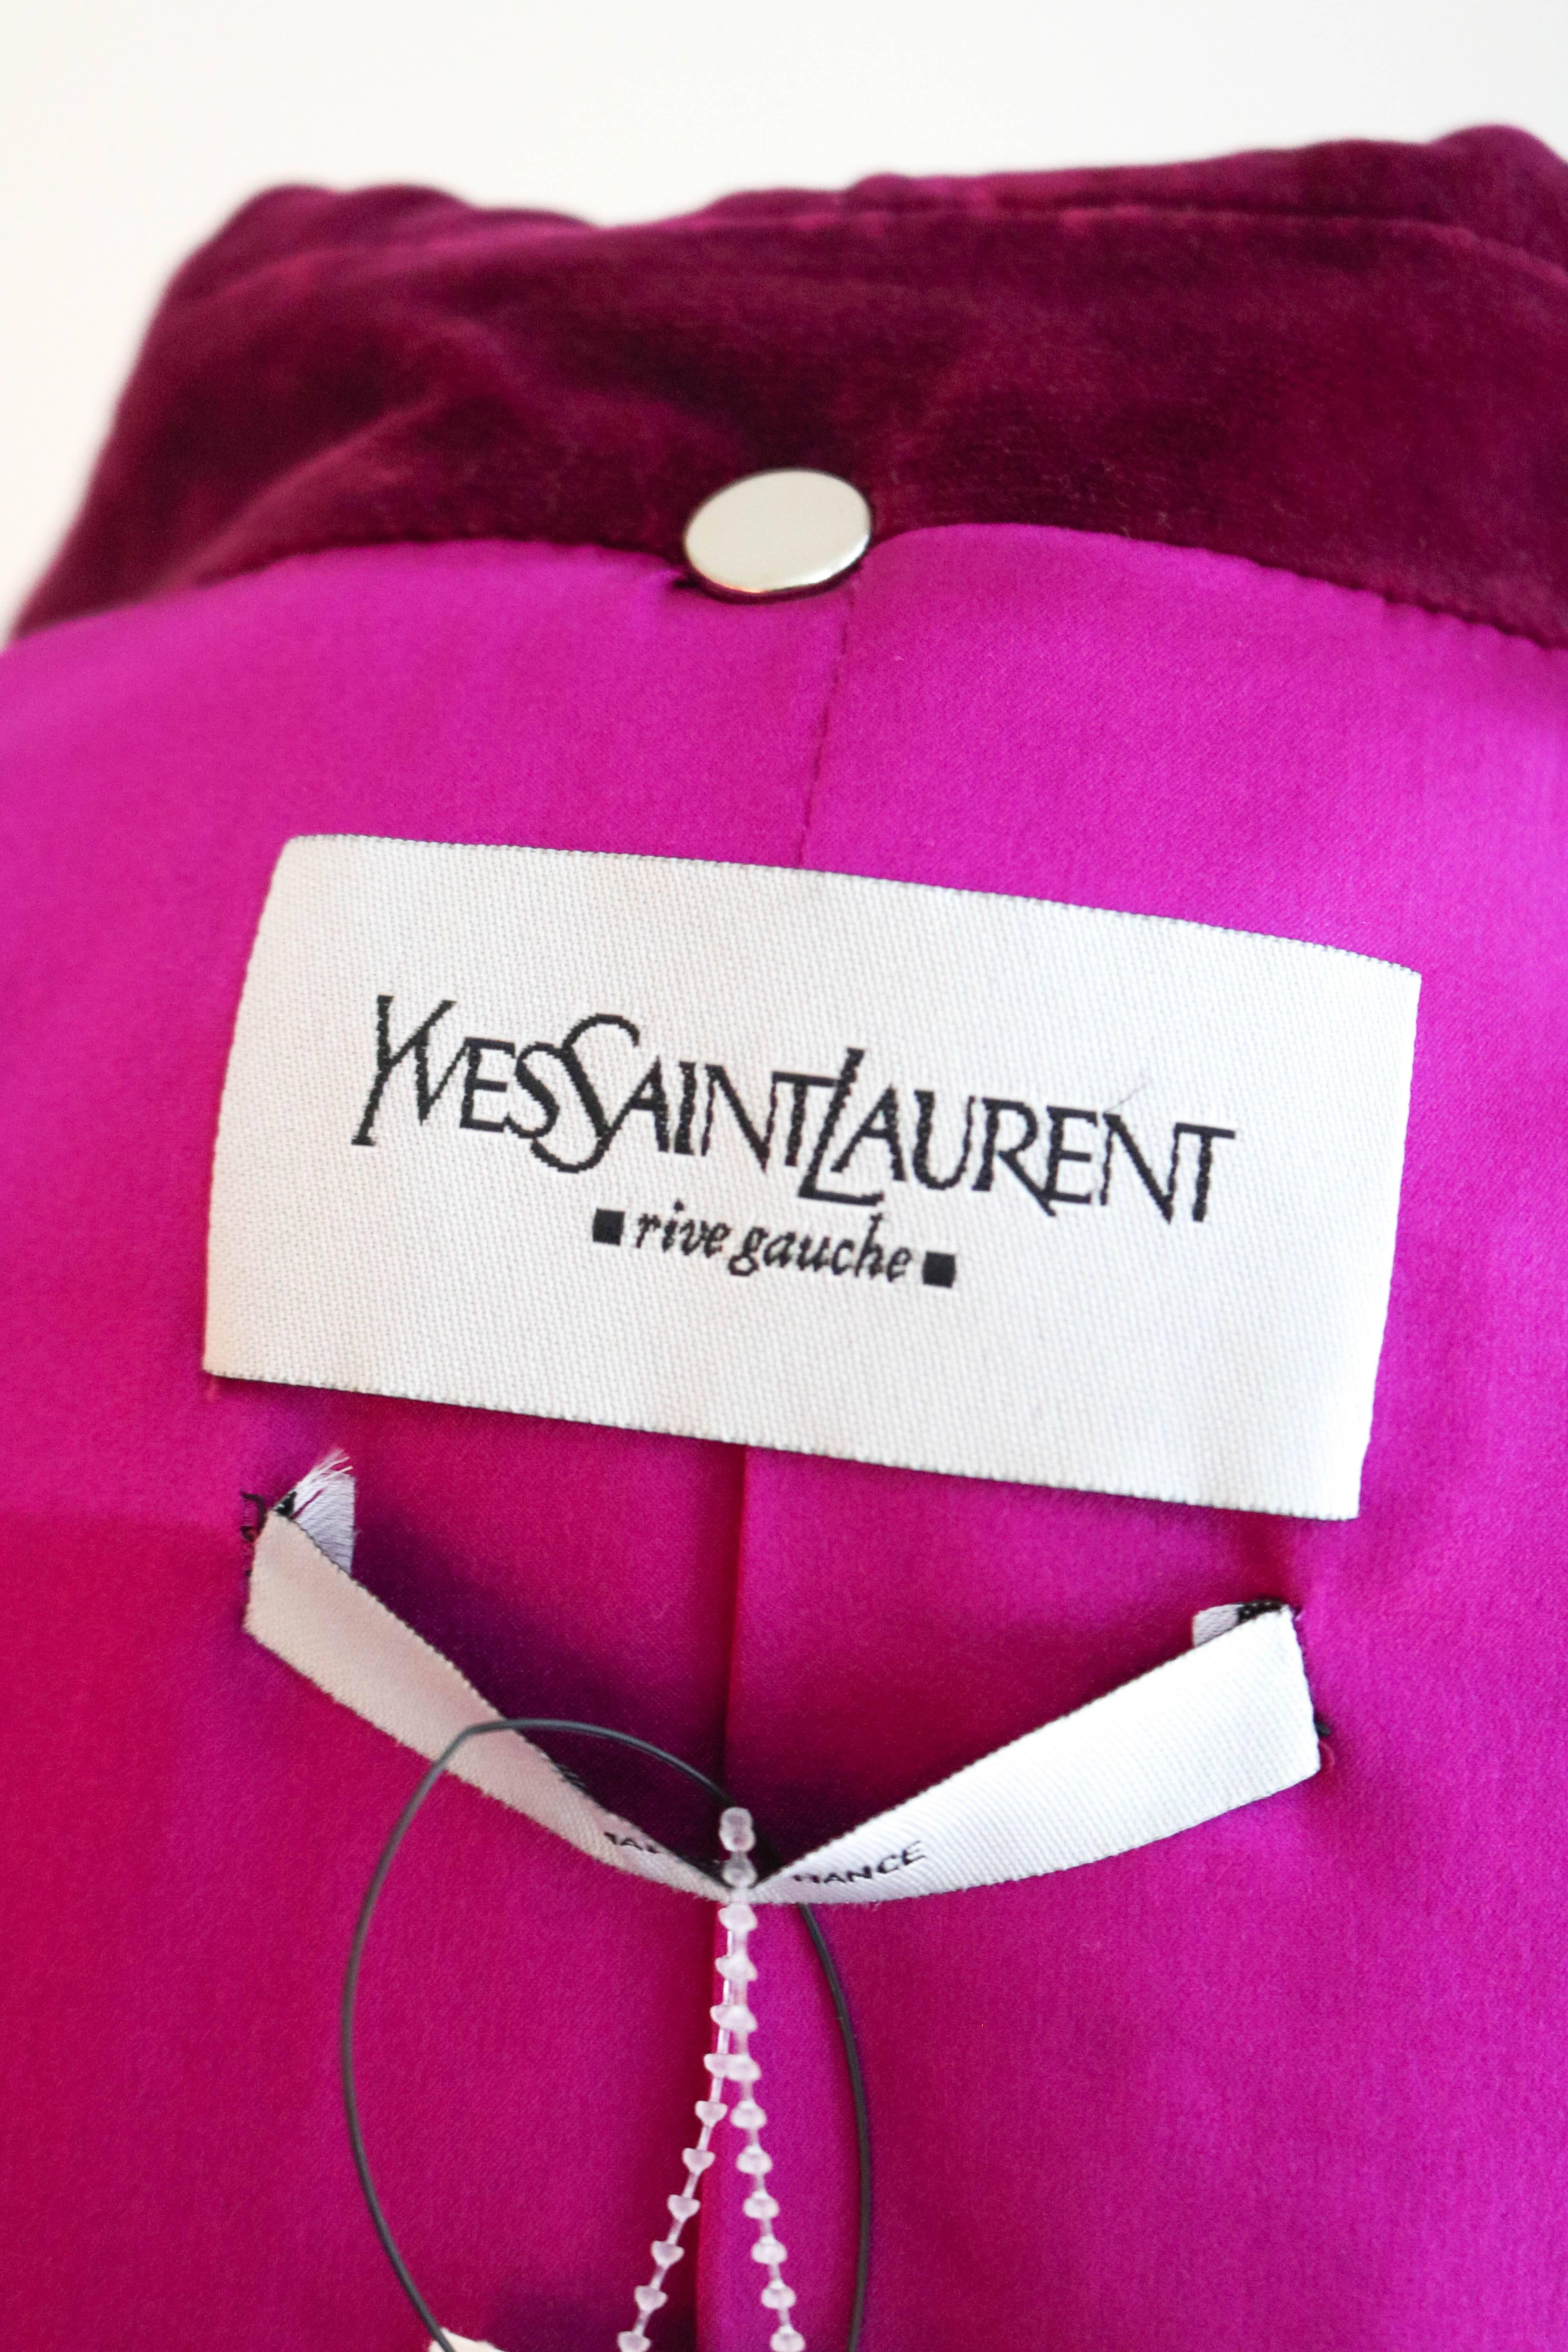 Yves Saint Laurent Rive Gauche Velvet Evening Jacket 48 For Sale 2